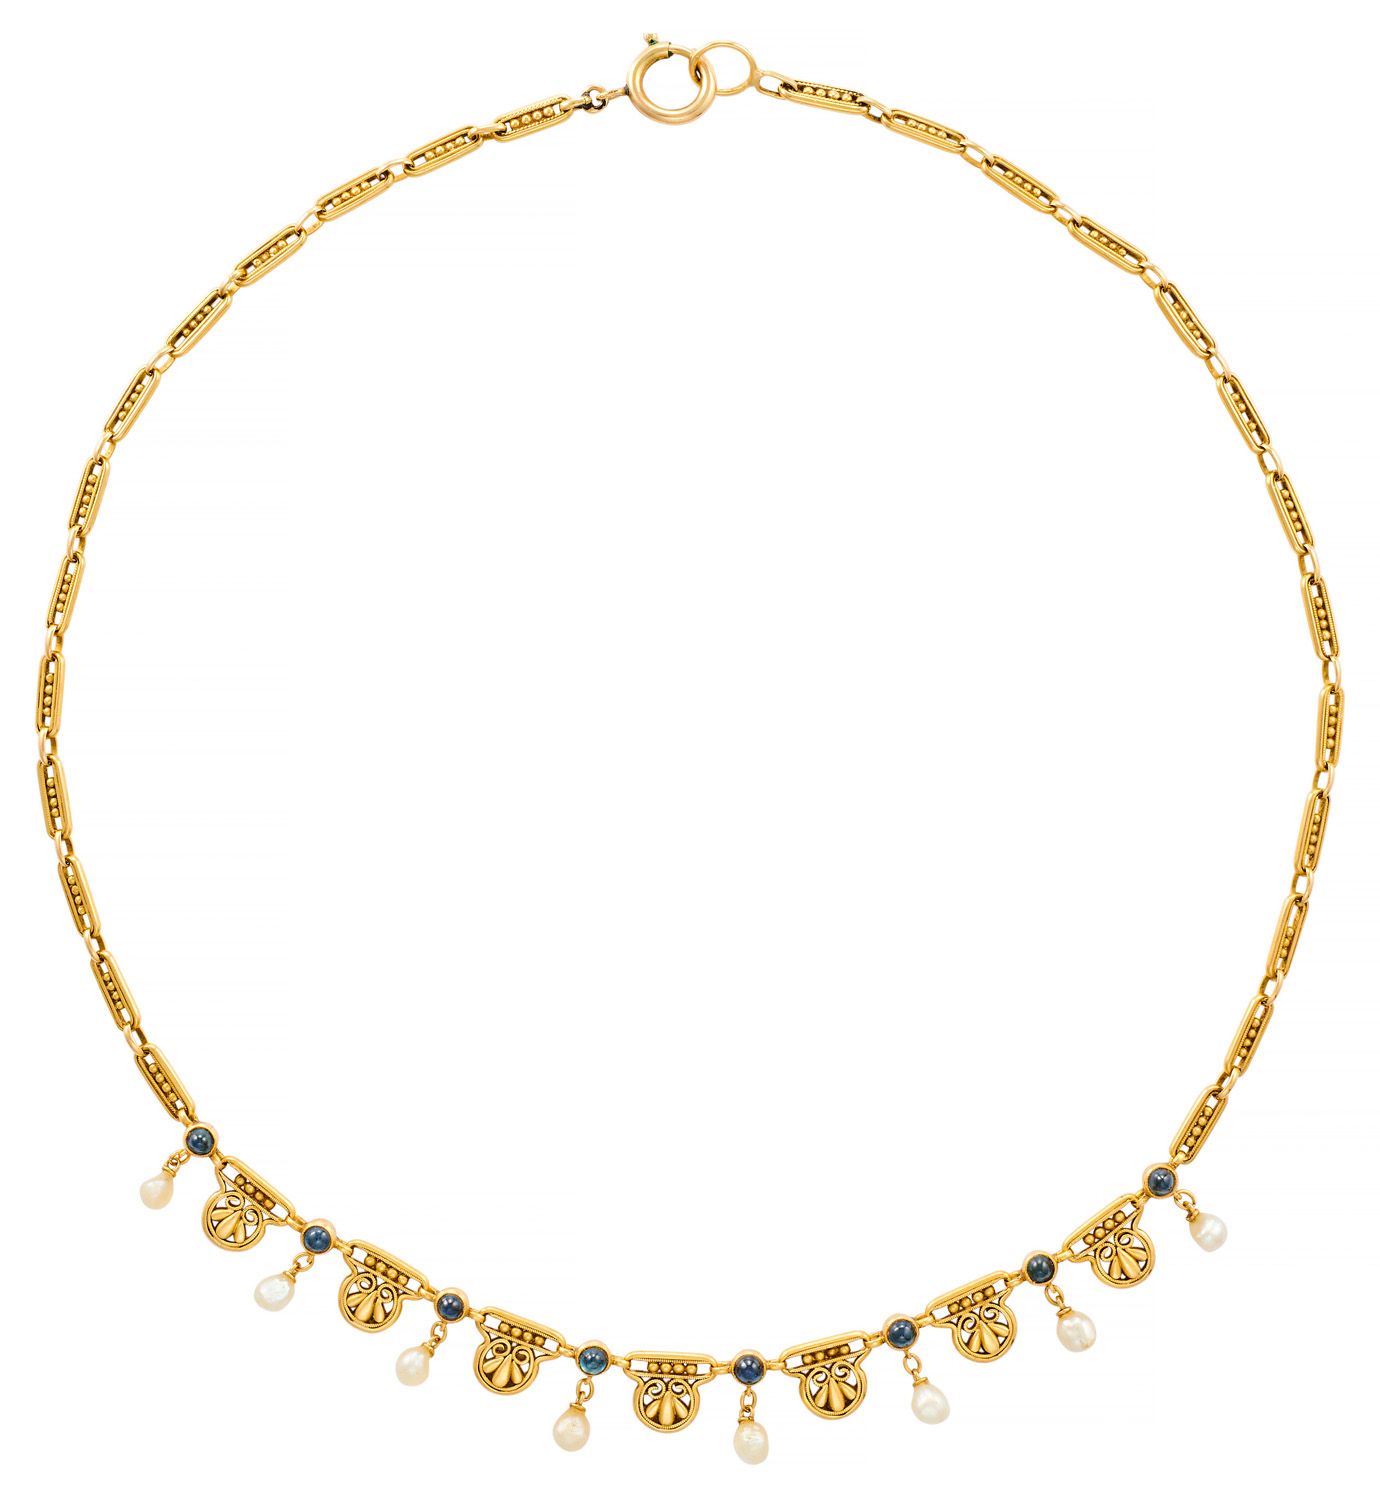 Collier draperie in oro giallo con elementi traforati che racchiudono perle preg&hellip;